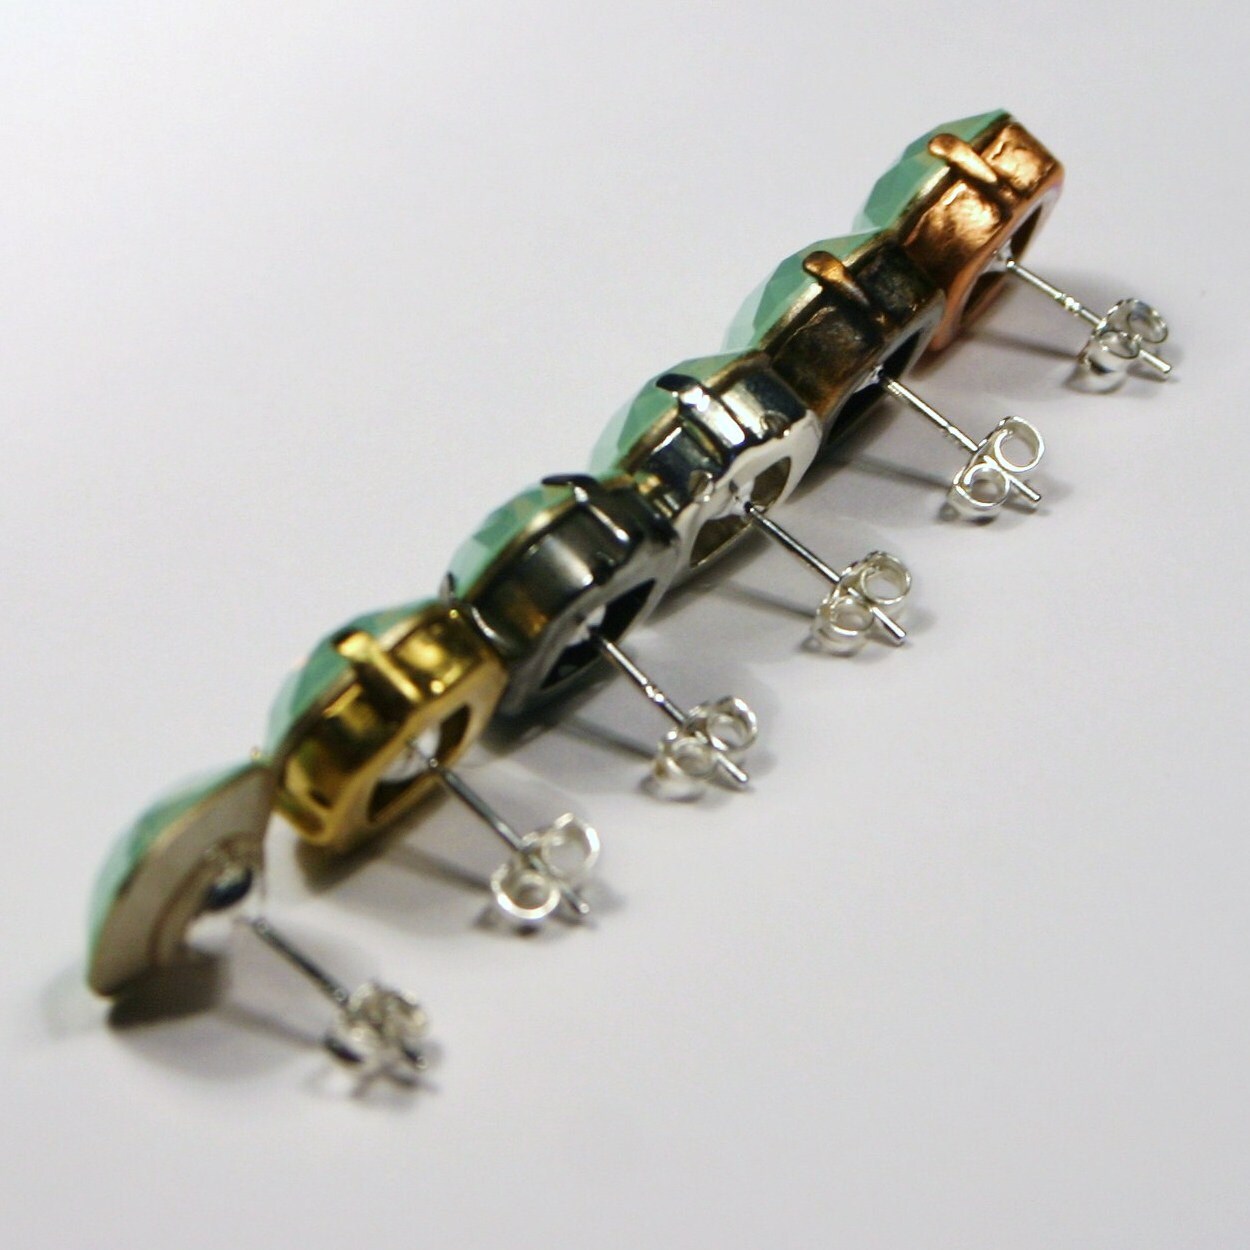 Sparkling Seafoam Green Stud Earrings Clear Resin W/metallic